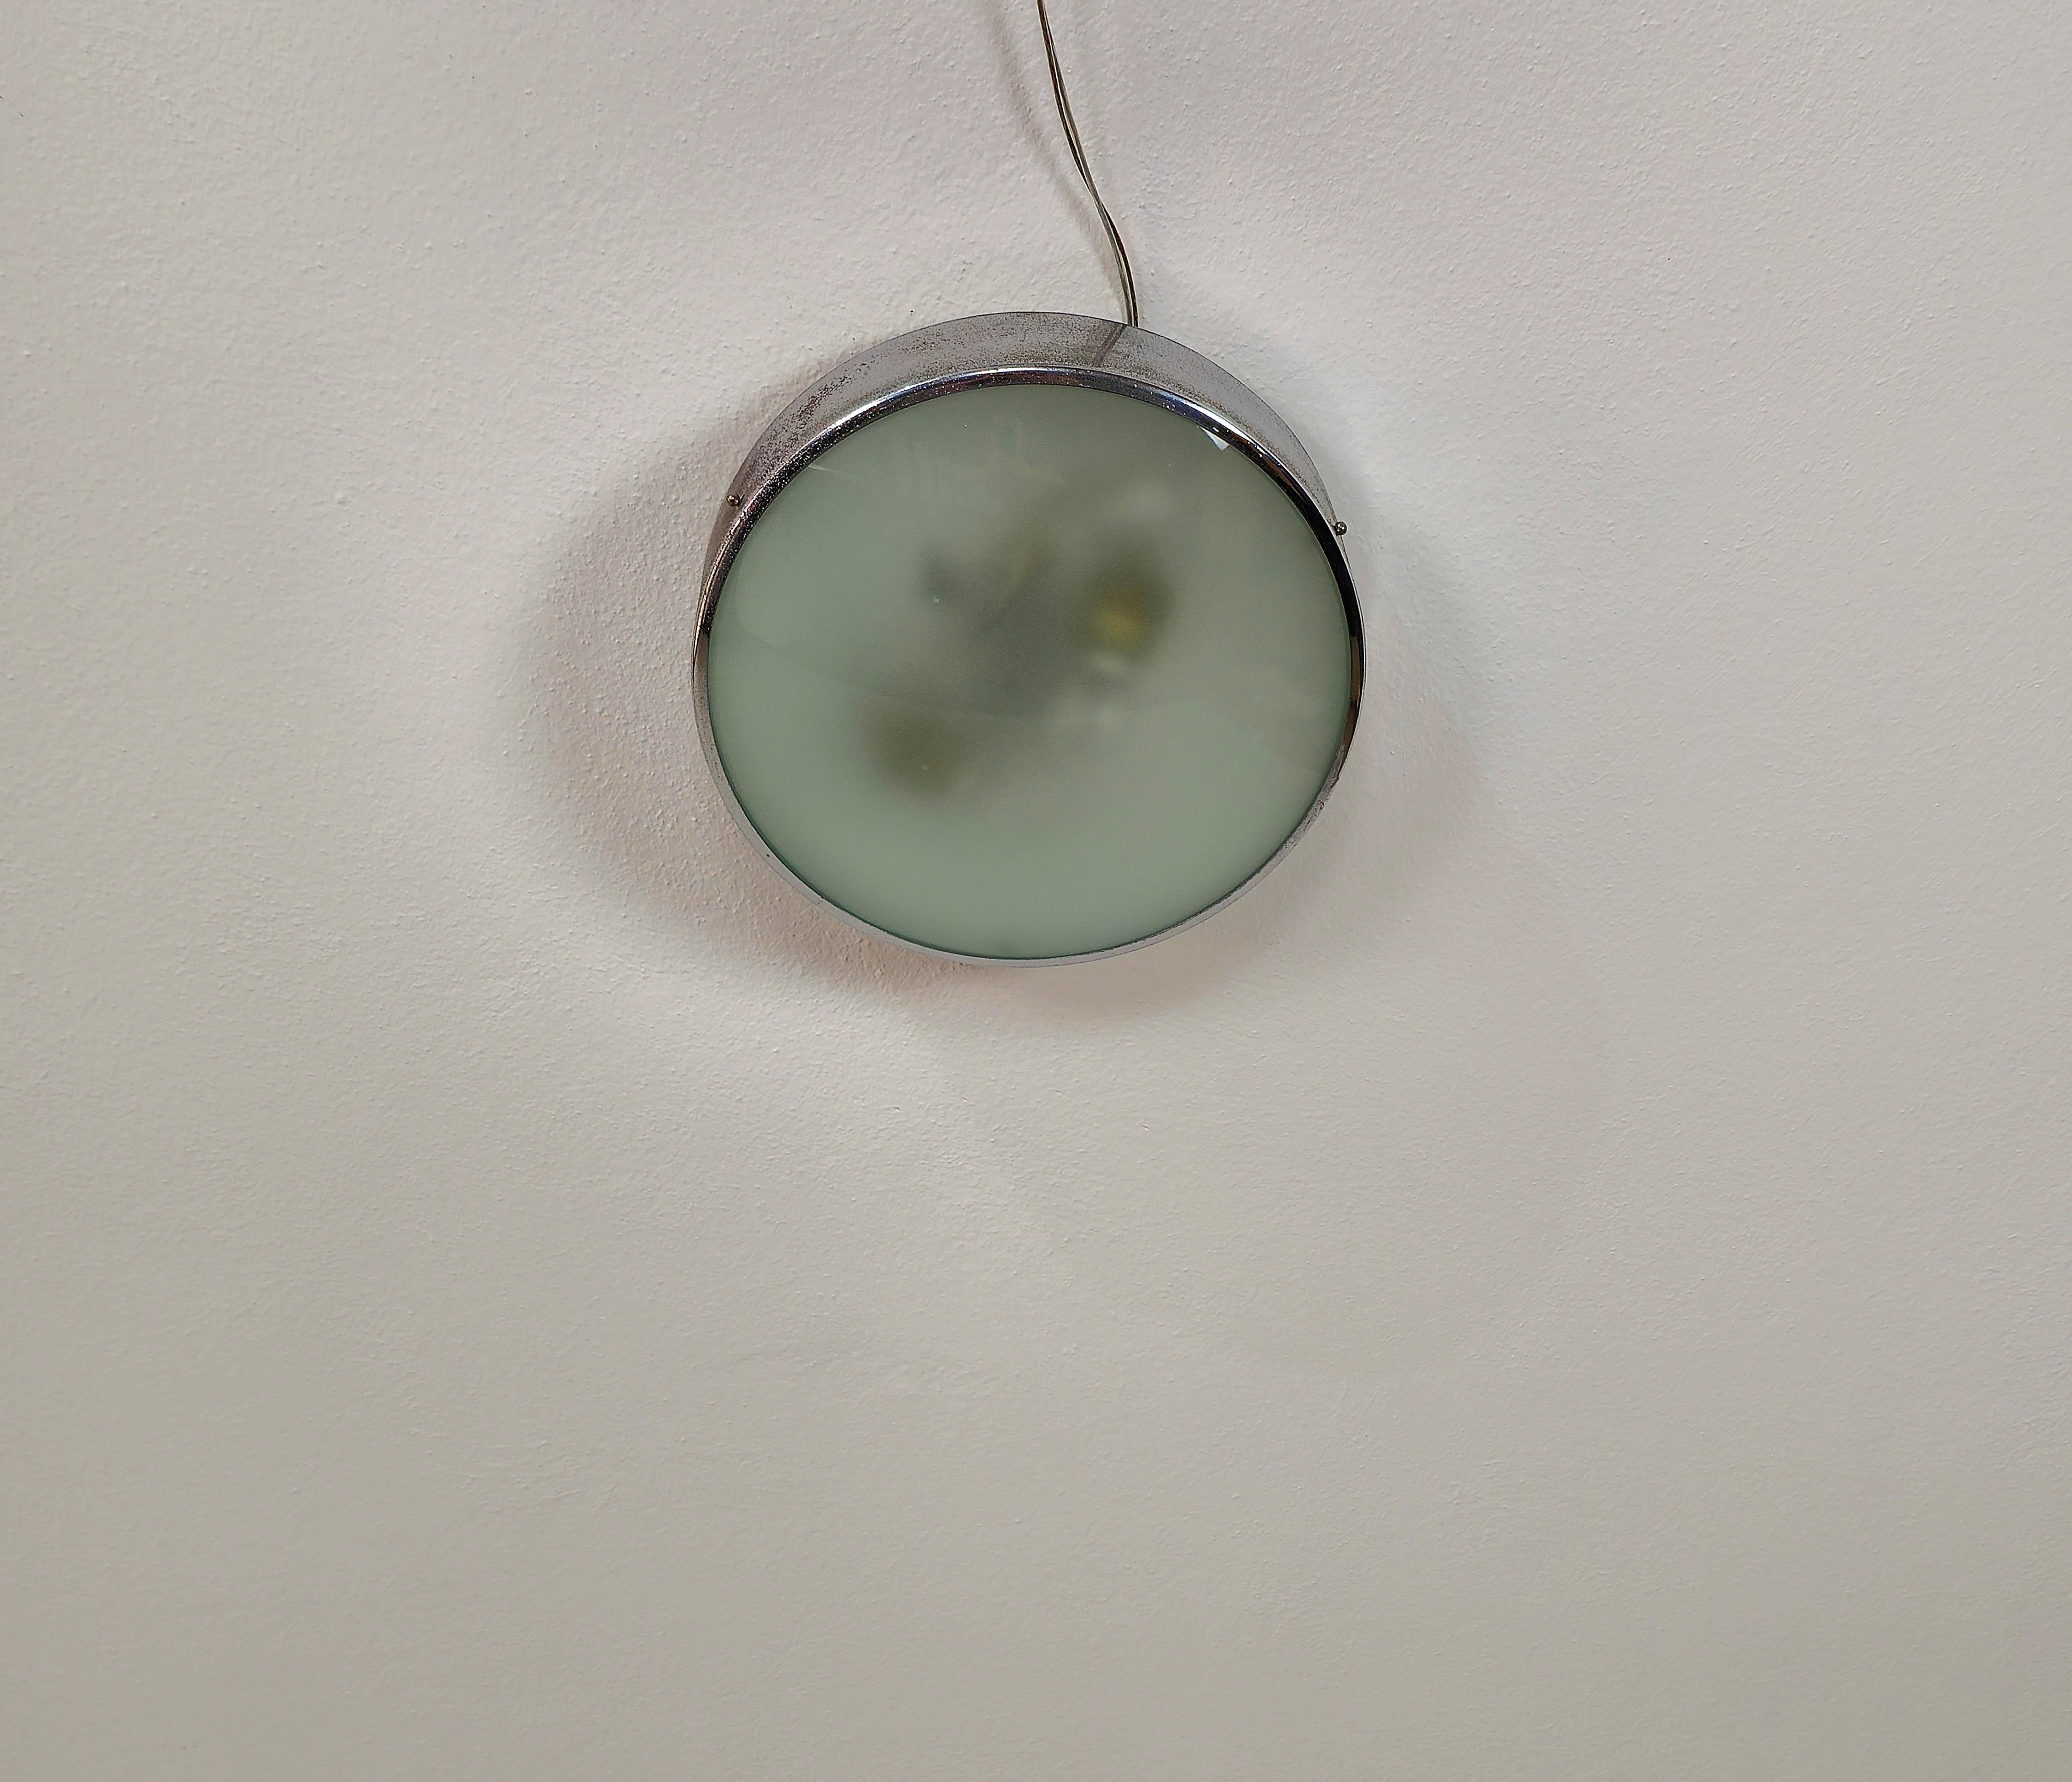 Plafonnier/applique produit dans les années 60 dans le style de Fontana Arte.
Le plafonnier a une structure avec 2 lampes E27 en métal émaillé avec une bordure en métal chromé qui soutiennent ensemble un verre opaque concave dans la nuance du vert